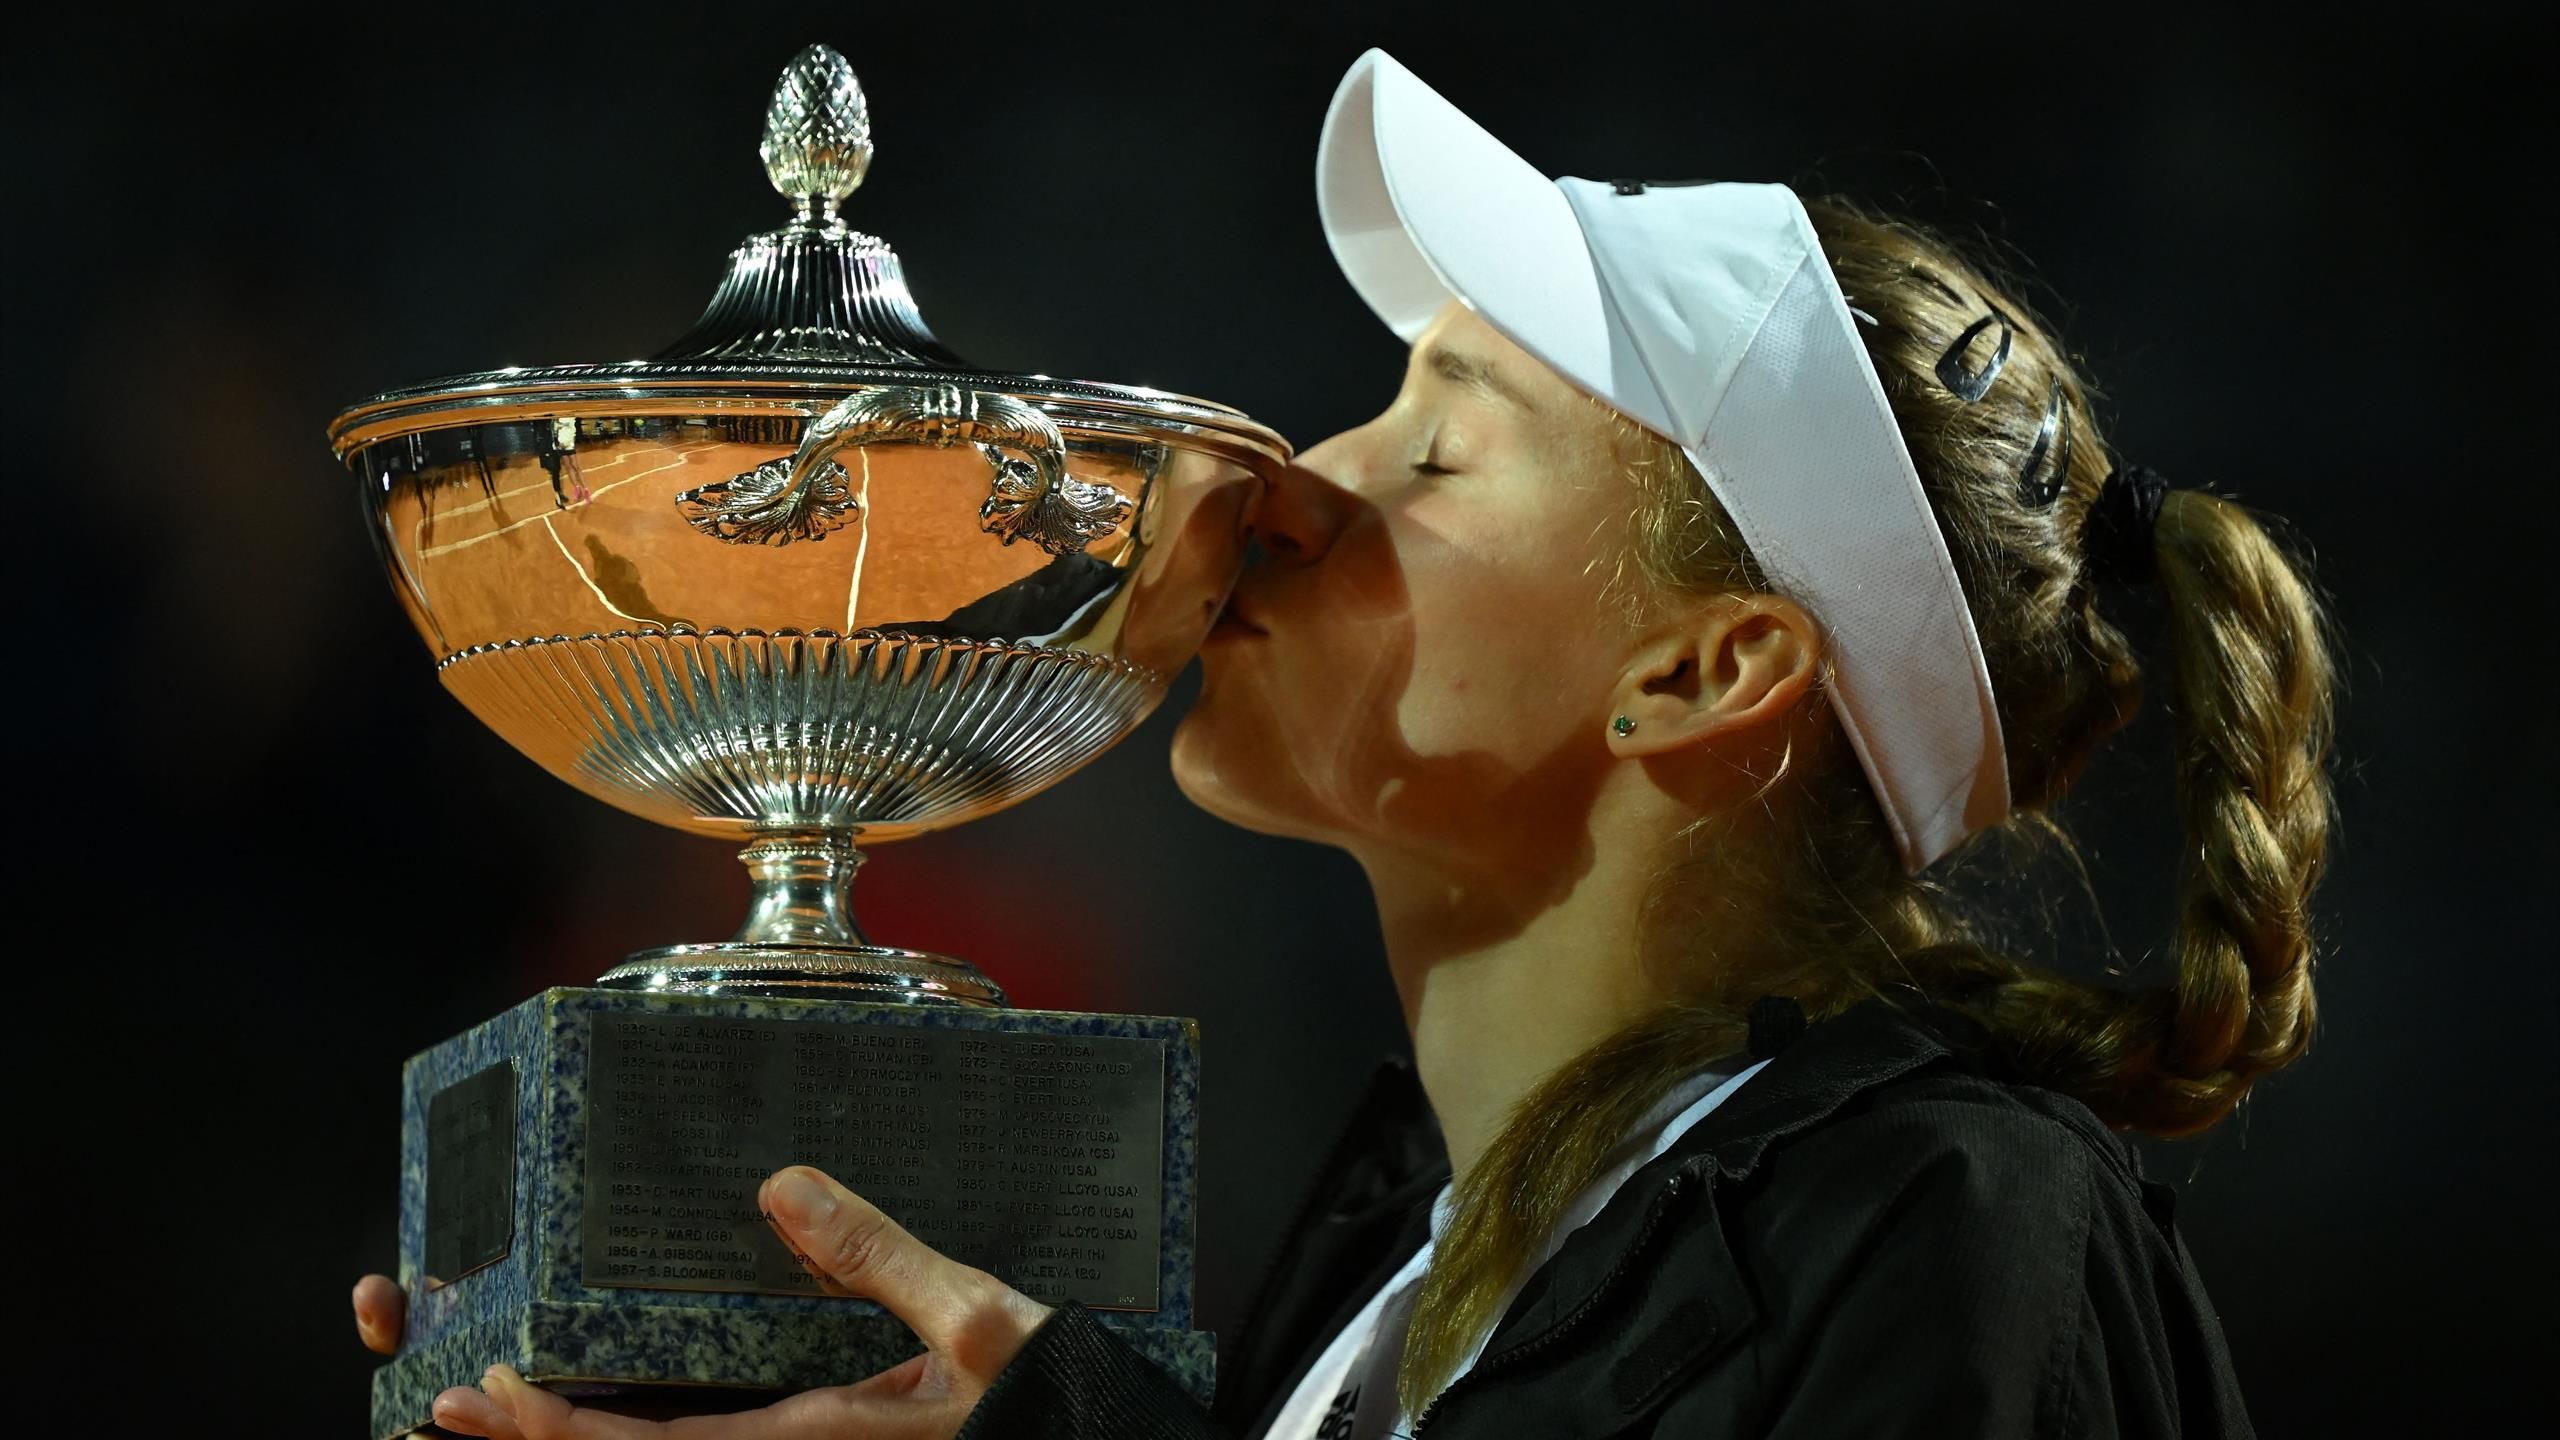 Elena Rybakina wins Italian Open after Anhelina Kalinina retires